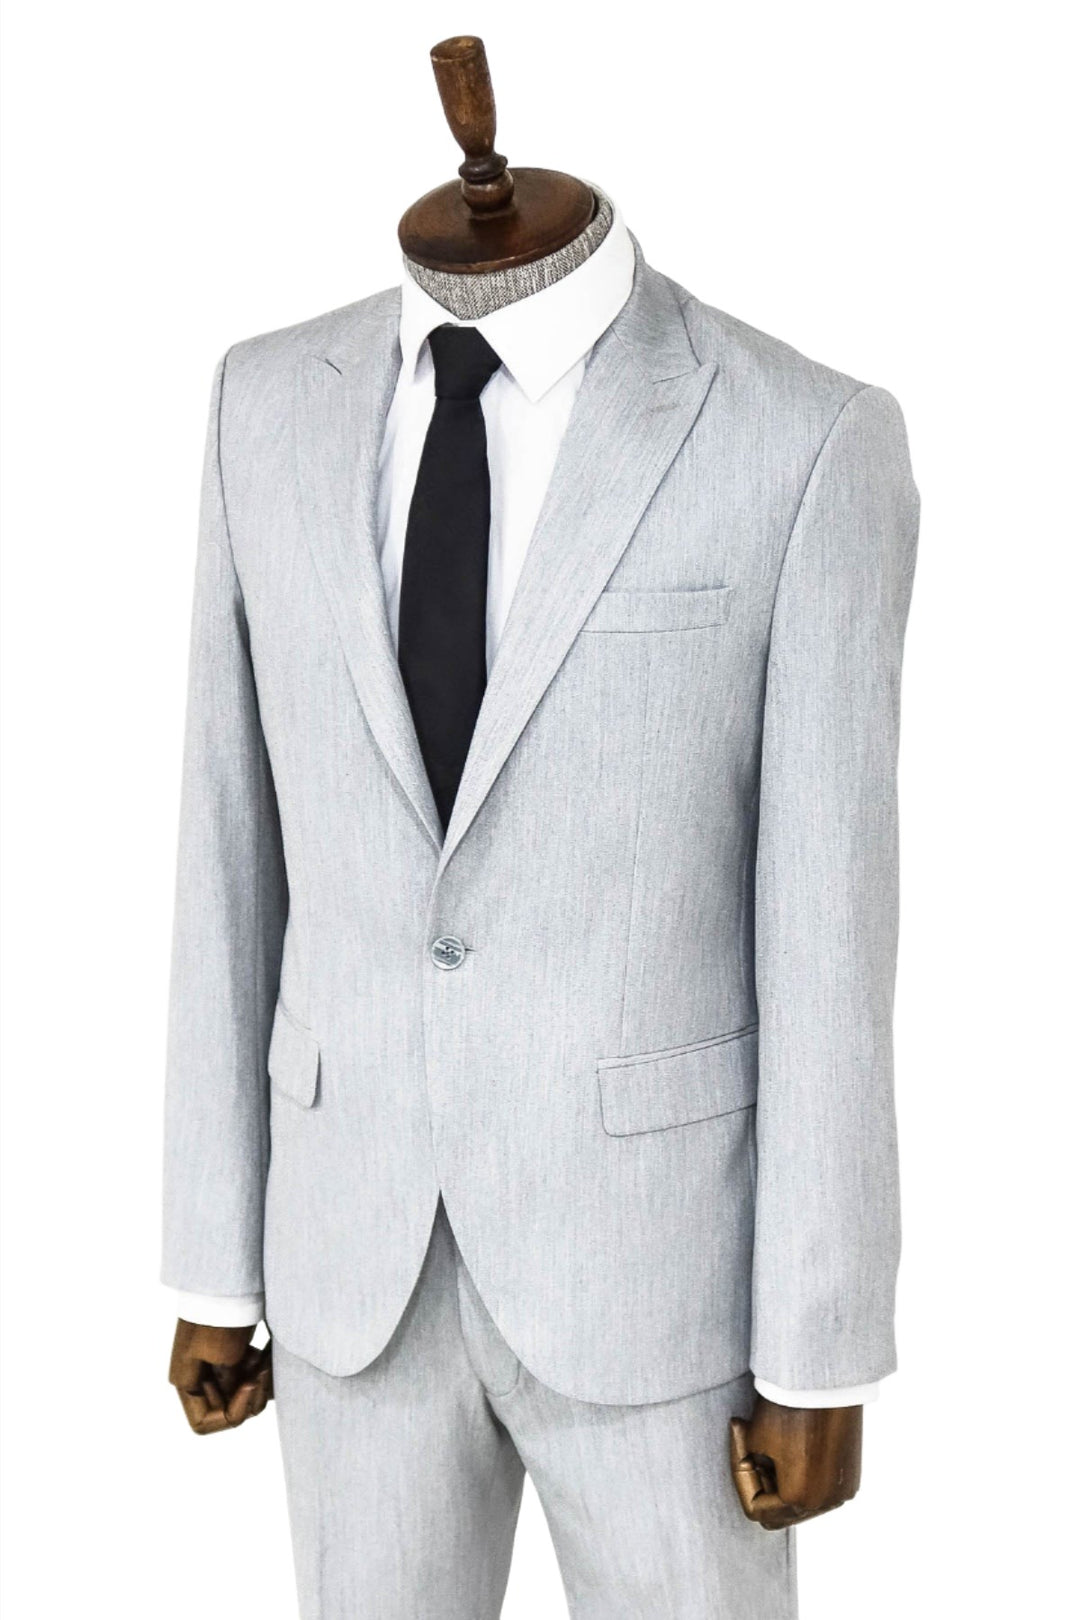 2 Piece Plain Slim Fit Light Grey Men Suit - Wessi